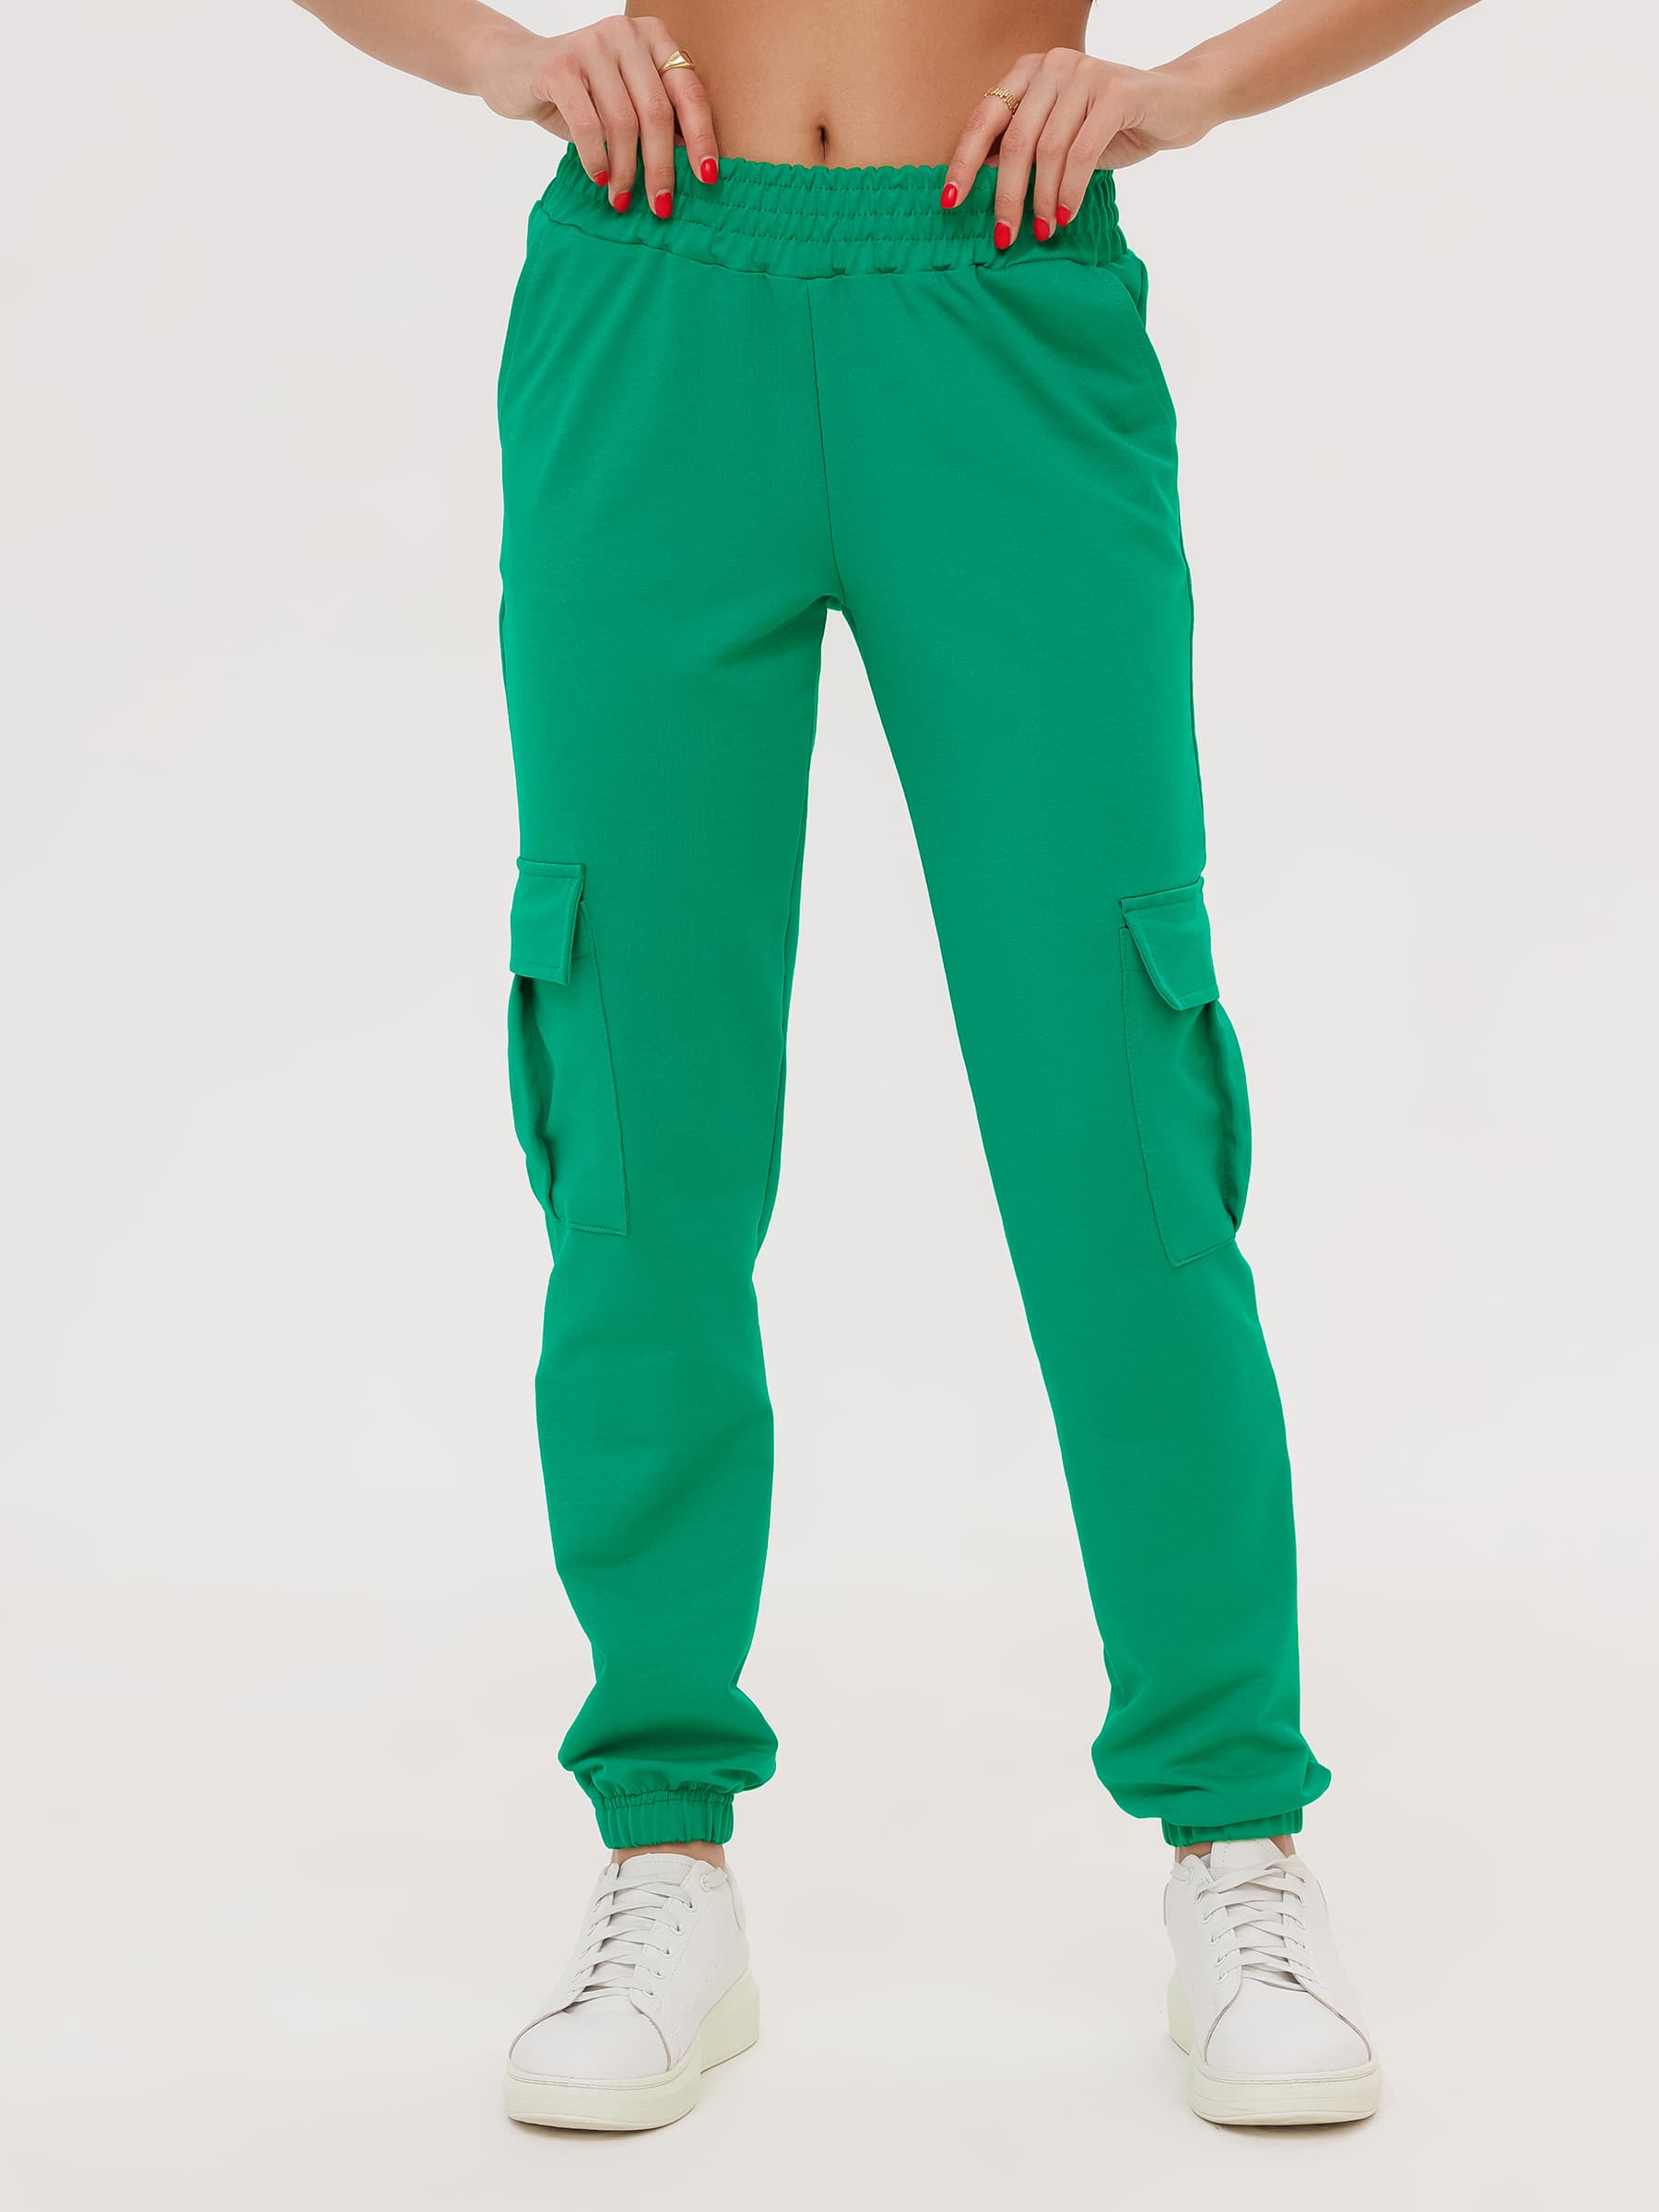 Жен. брюки повседневные арт. 23-0524 Зеленый р. 52 Моделлини, размер 52 - фото 3